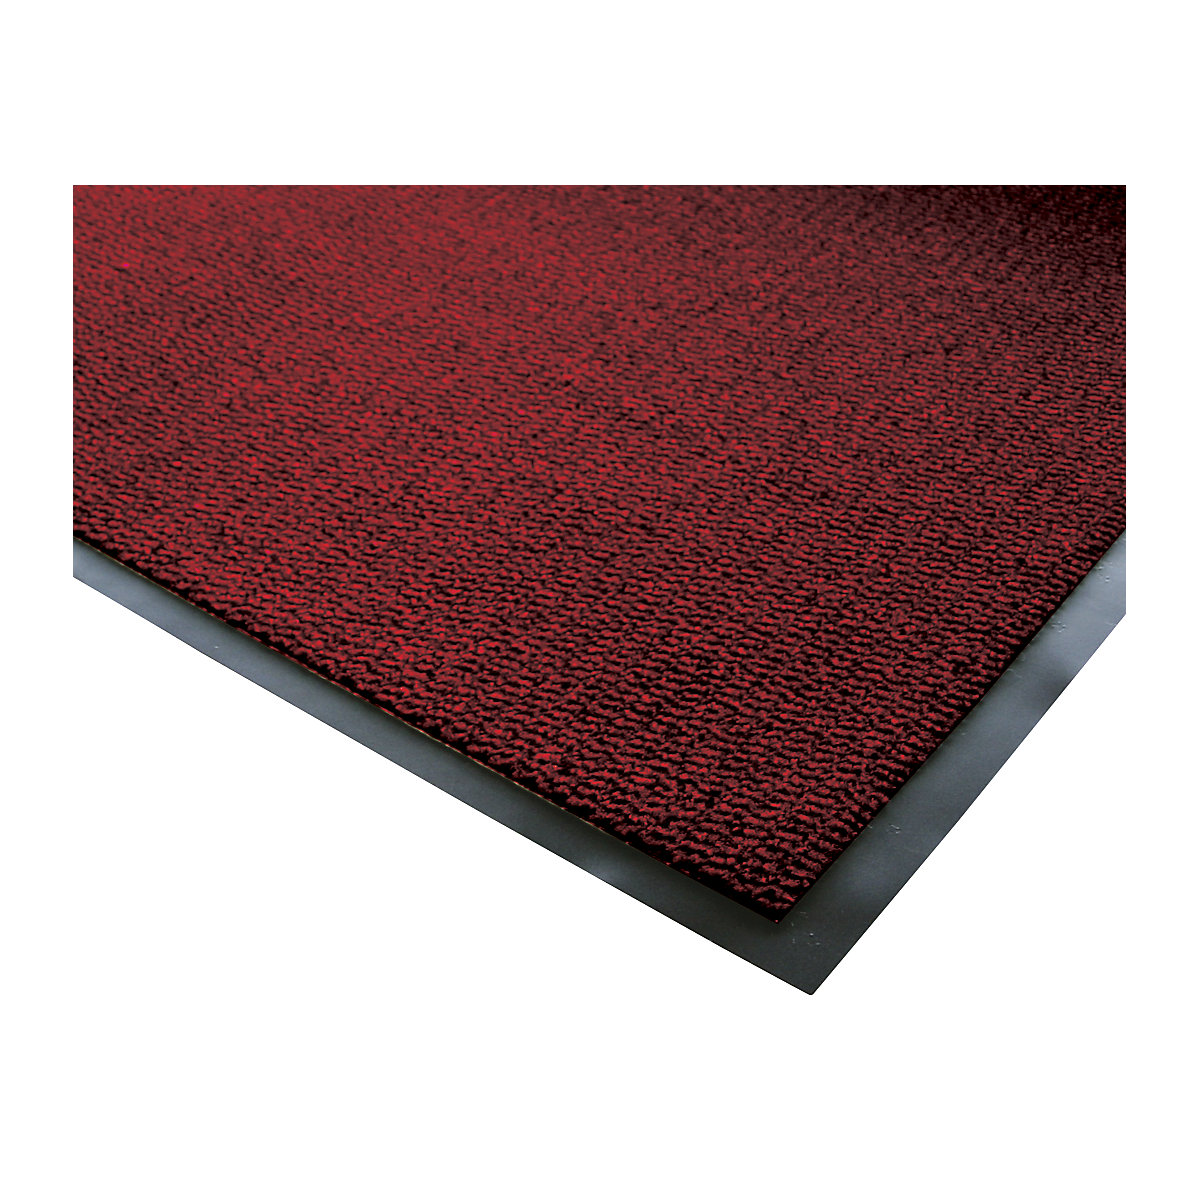 Esteira de retenção de sujidade para interior, pêlo em polipropileno, CxL 1800 x 1200 mm, preto / vermelho